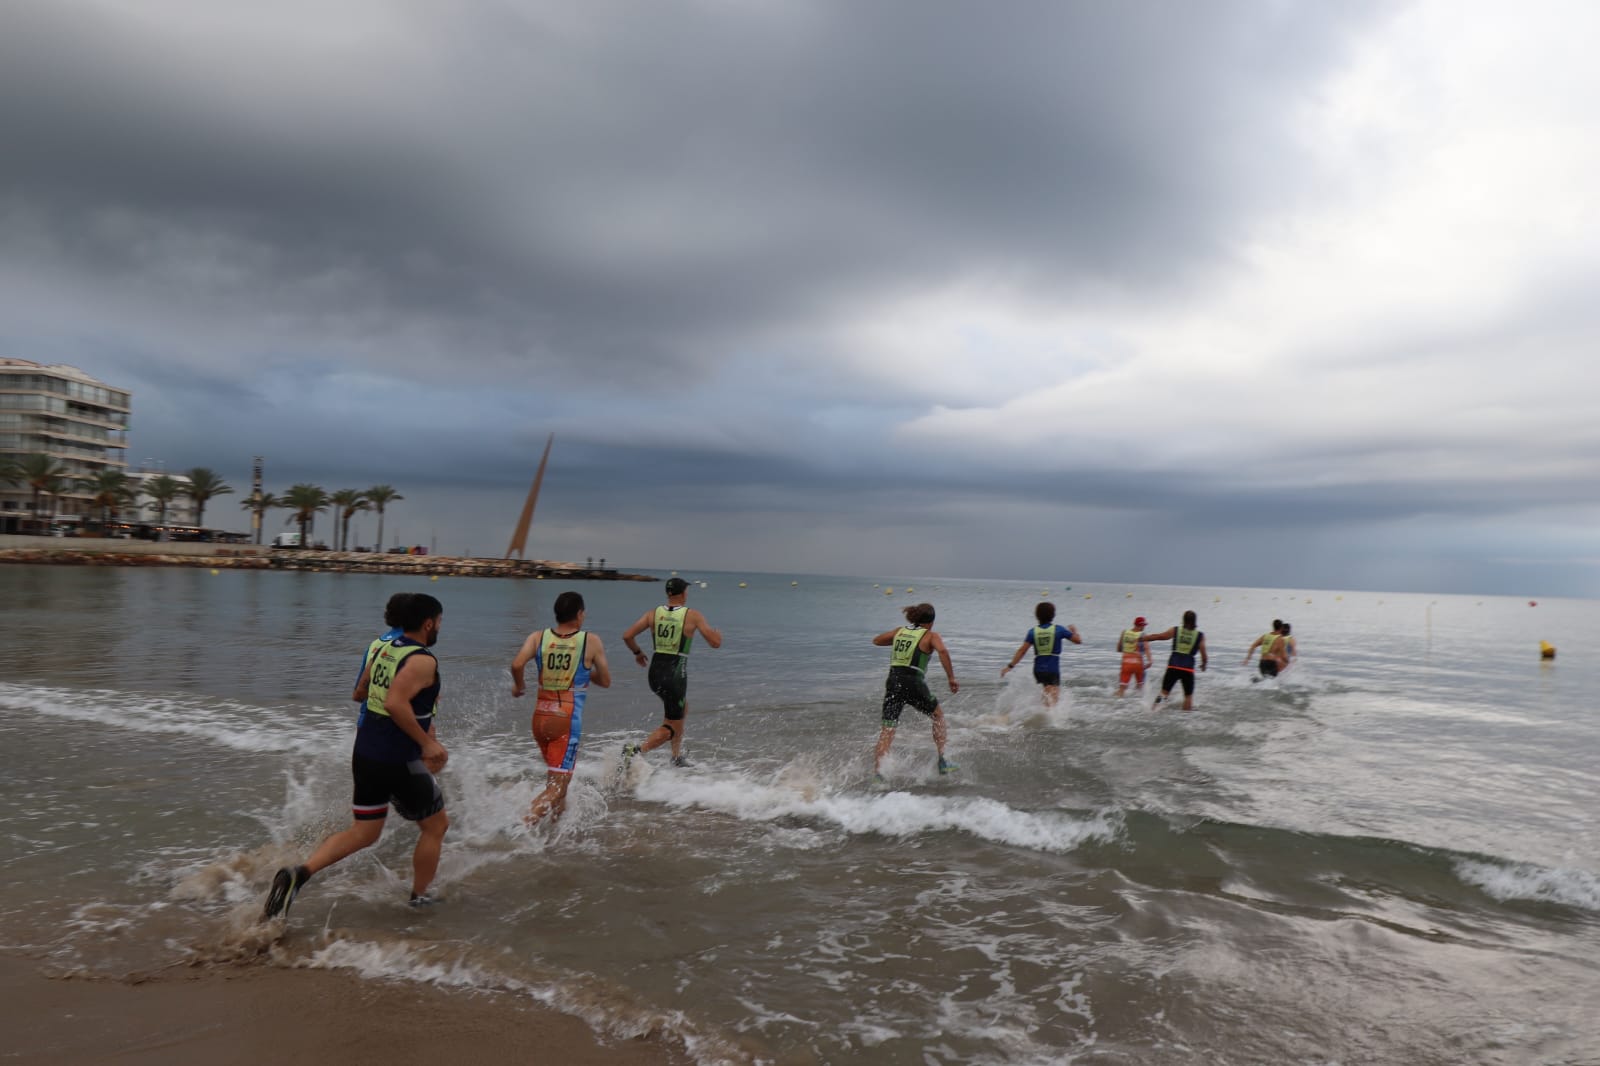 Foto del campionat de marxa aquàtica. En el plànol es veu la platja en persepectiva diagonal i els participants fent marxa per l'aigua.